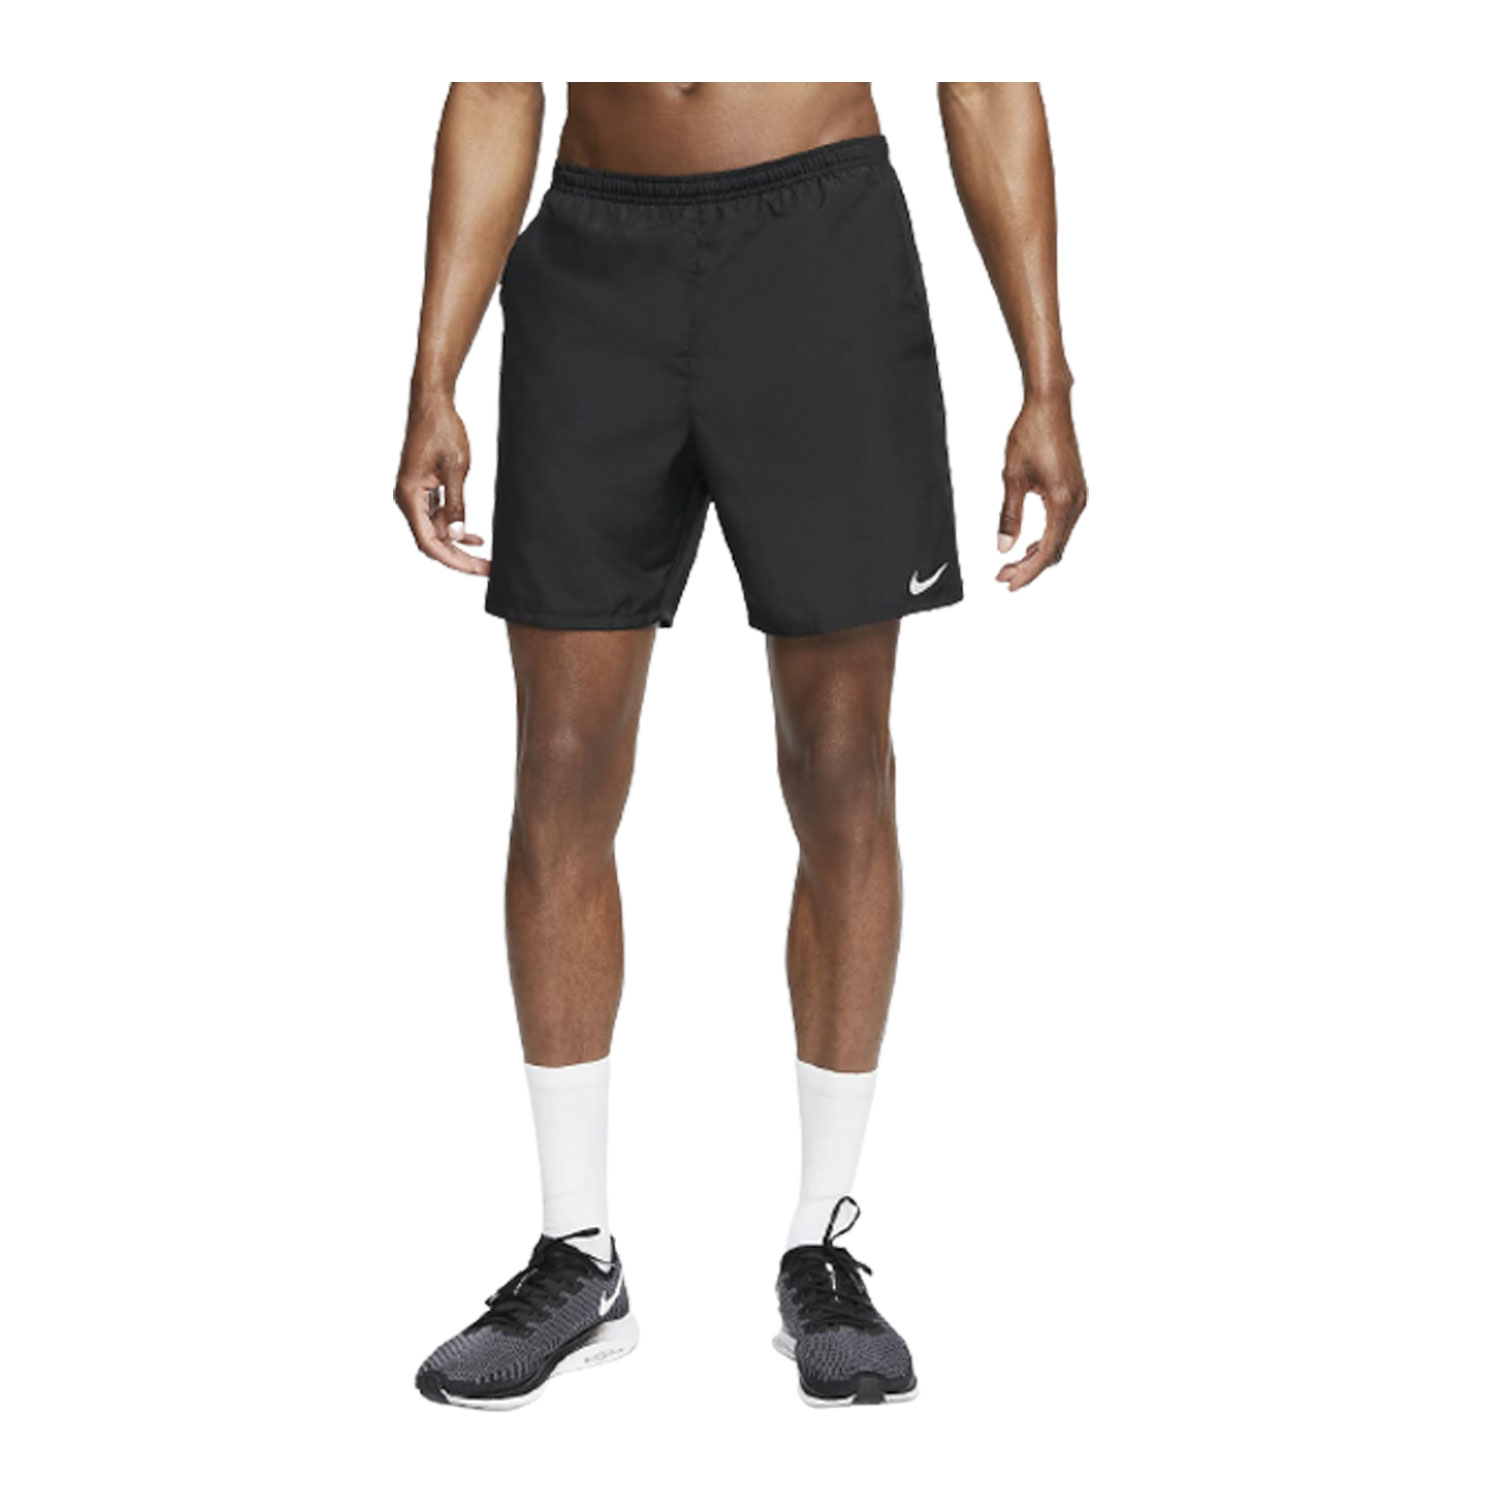 Men's Sports Shorts, M,L,XL,XXL (Pack of 12)